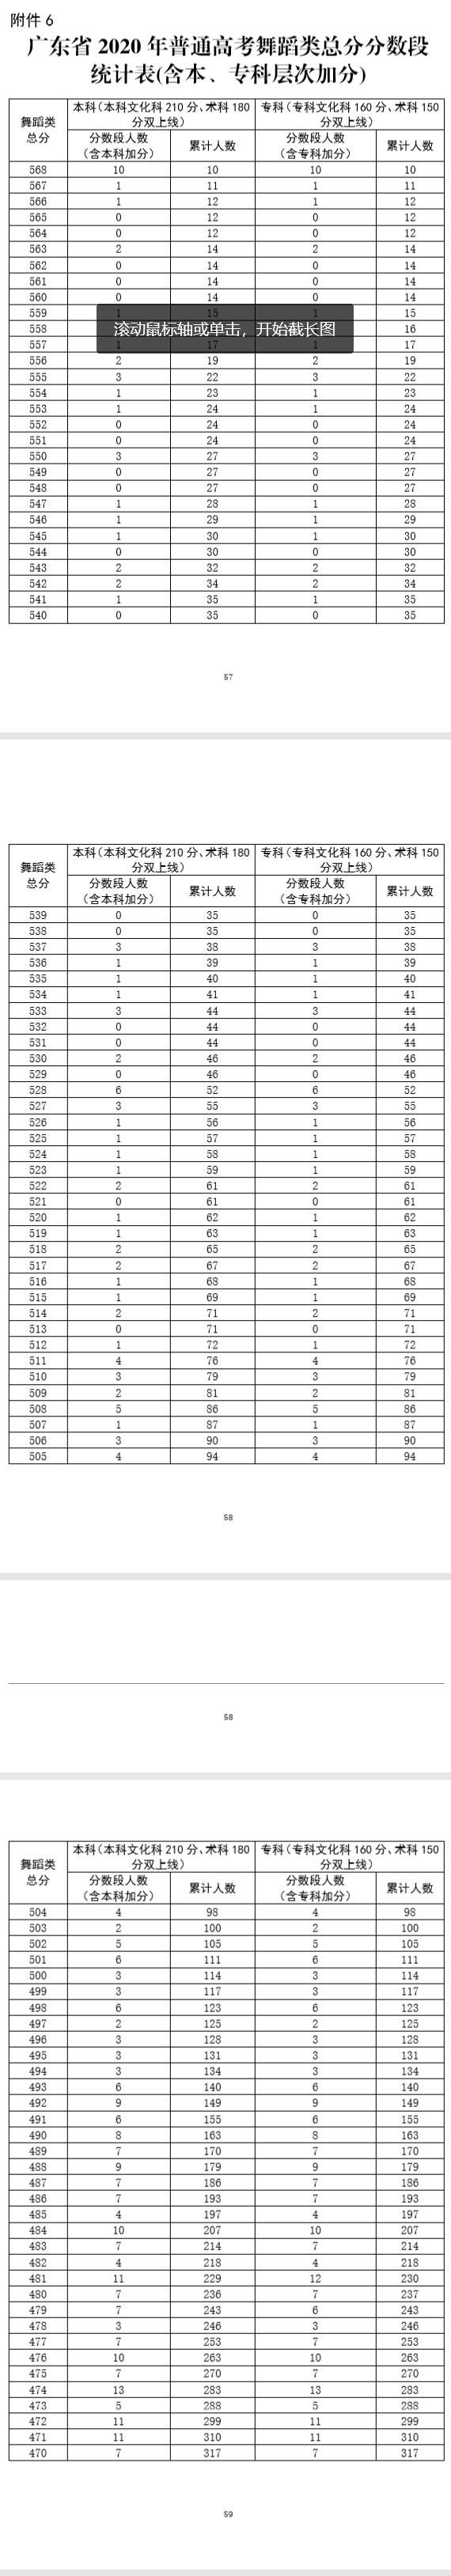 广东省2020年高考舞蹈类总分排名一分段统计表